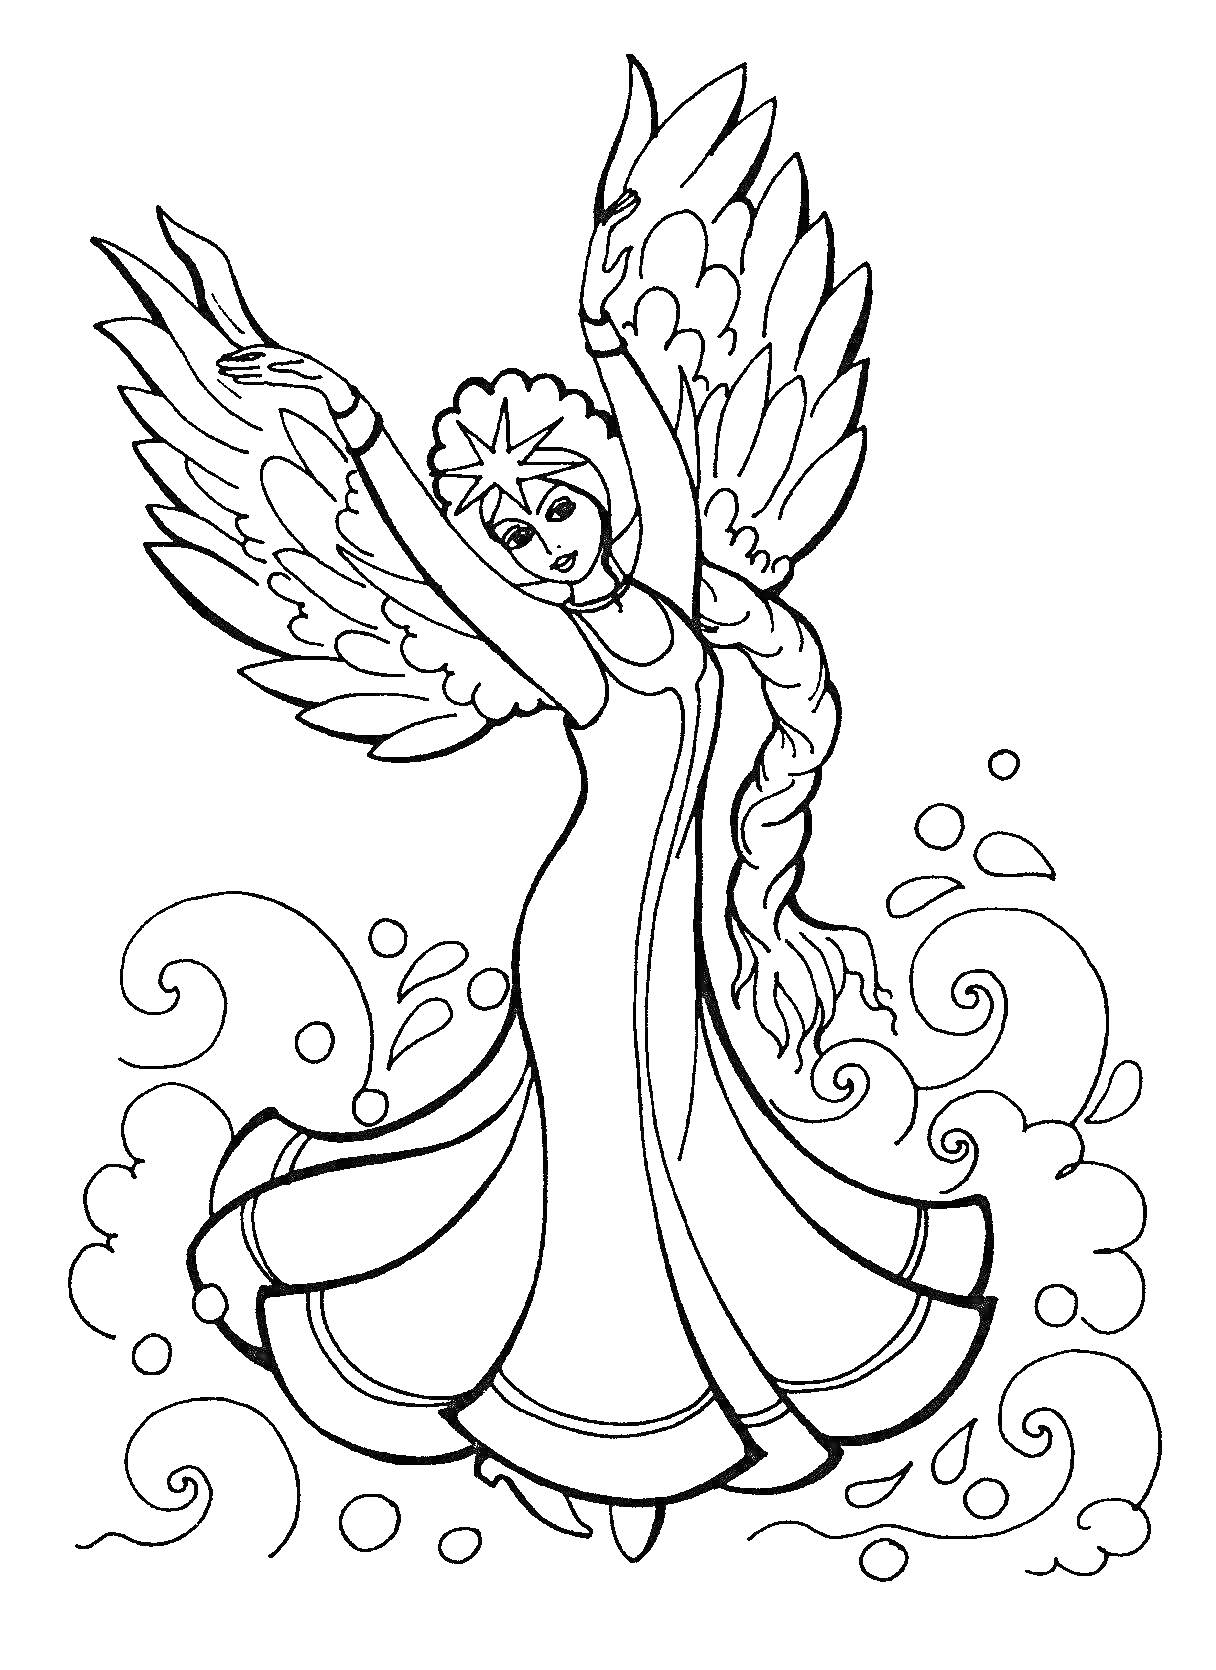 Раскраска Принцесса с крыльями в танце, волны и завитки